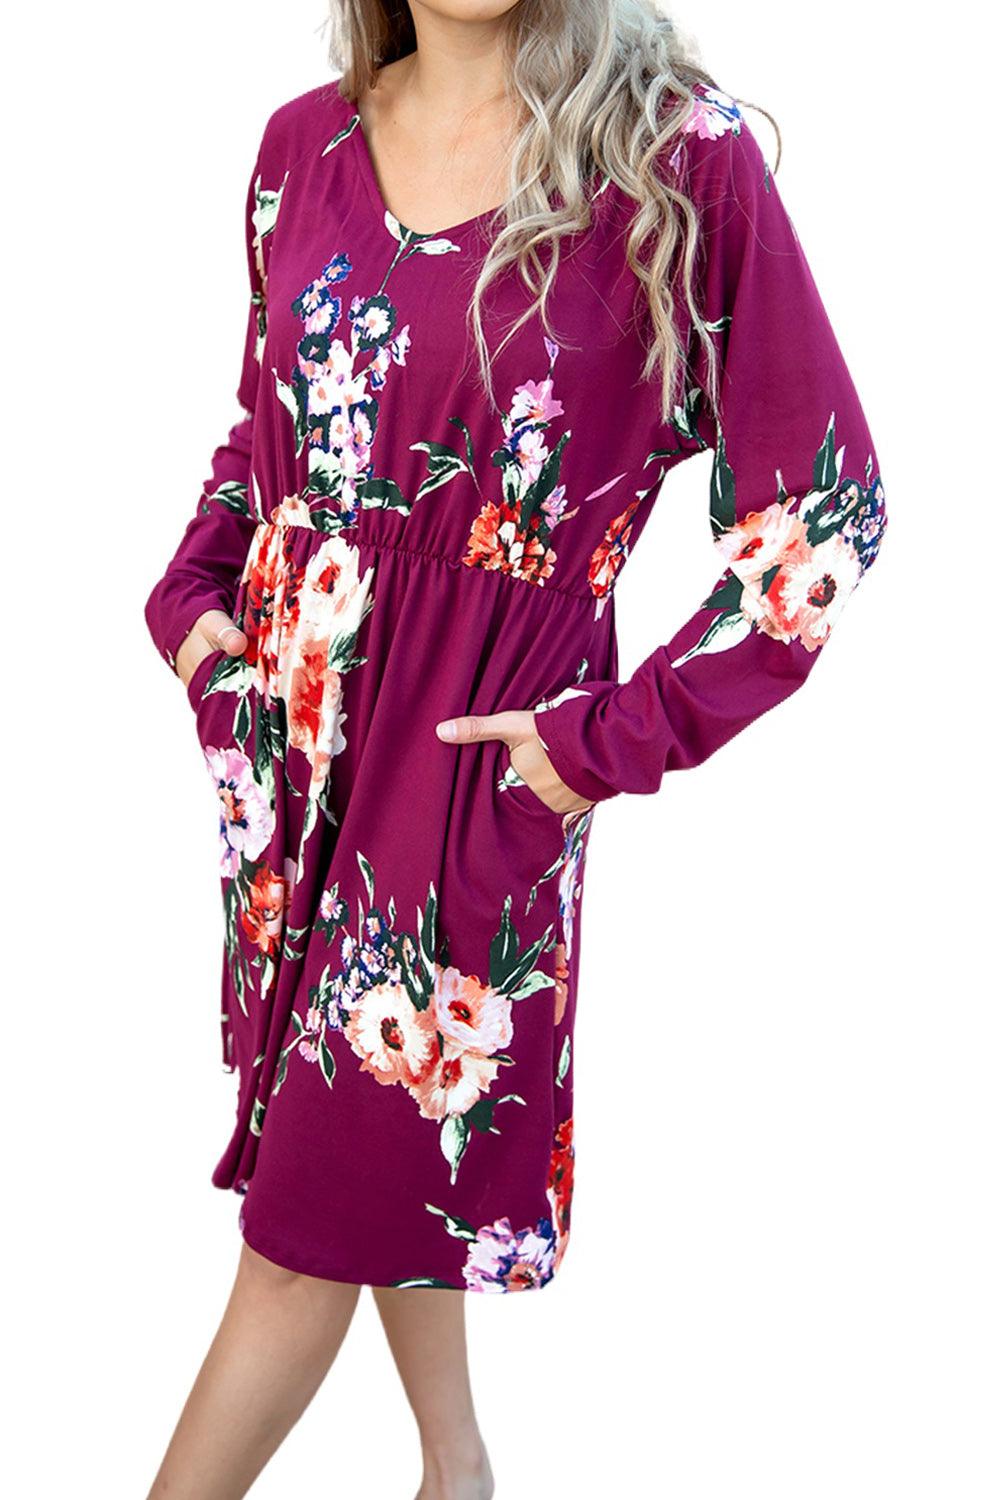 Long Sleeve High Waist Floral Dress - L & M Kee, LLC